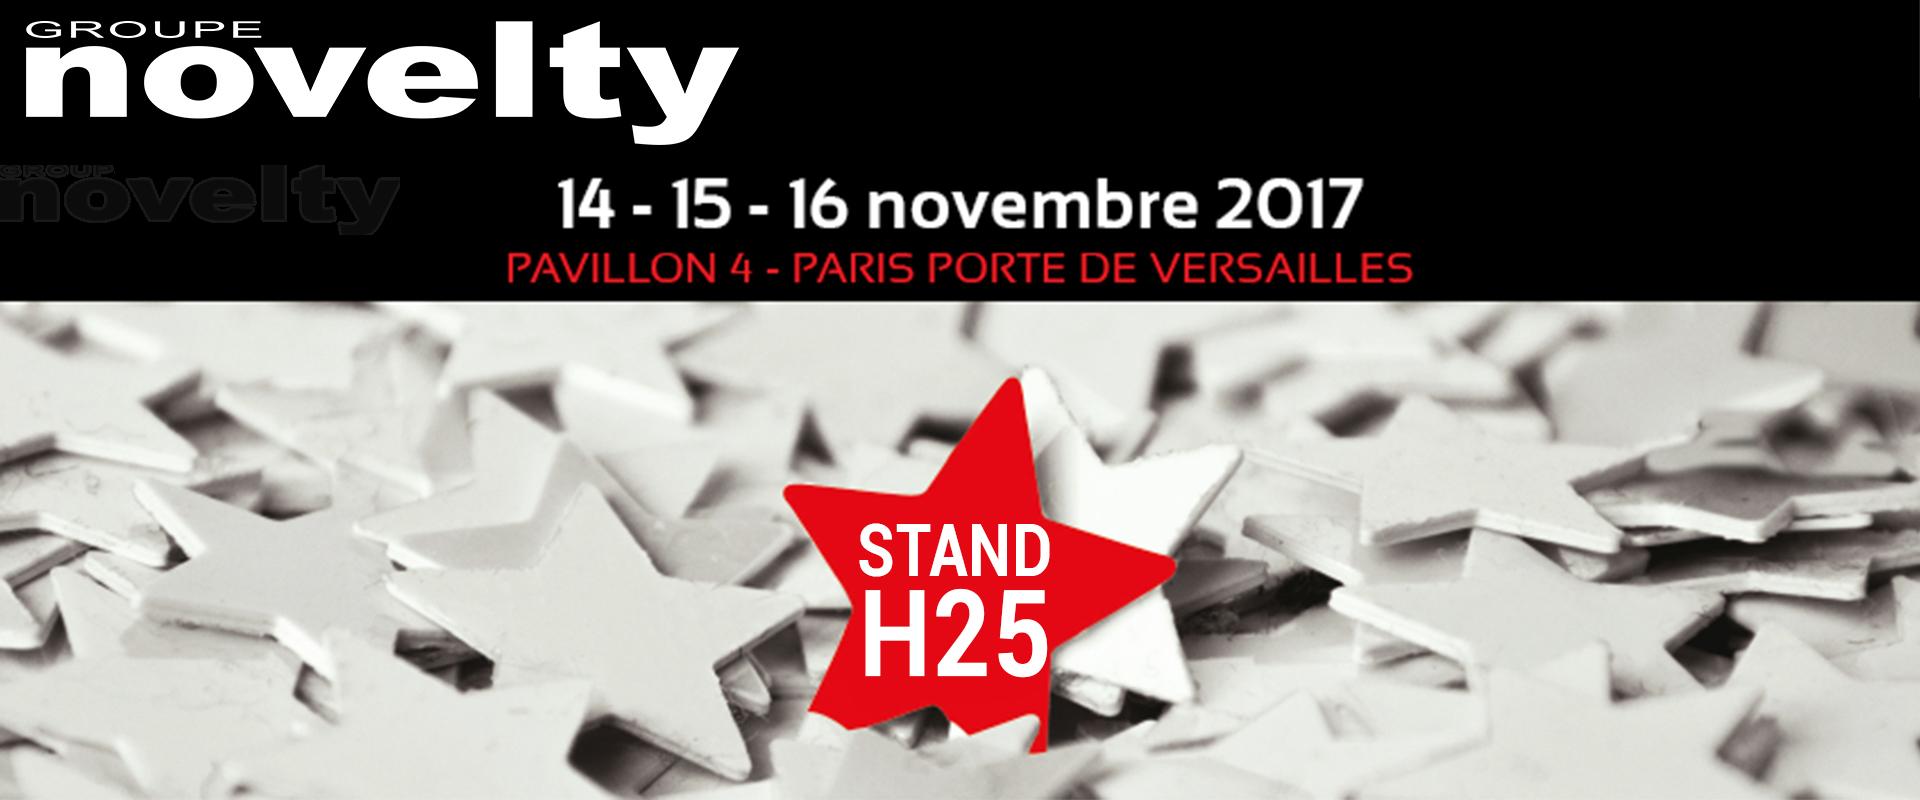 Visuel Retrouvez les équipes NOVELTY - Salon HEAVENT Paris 2017 - STAND H25